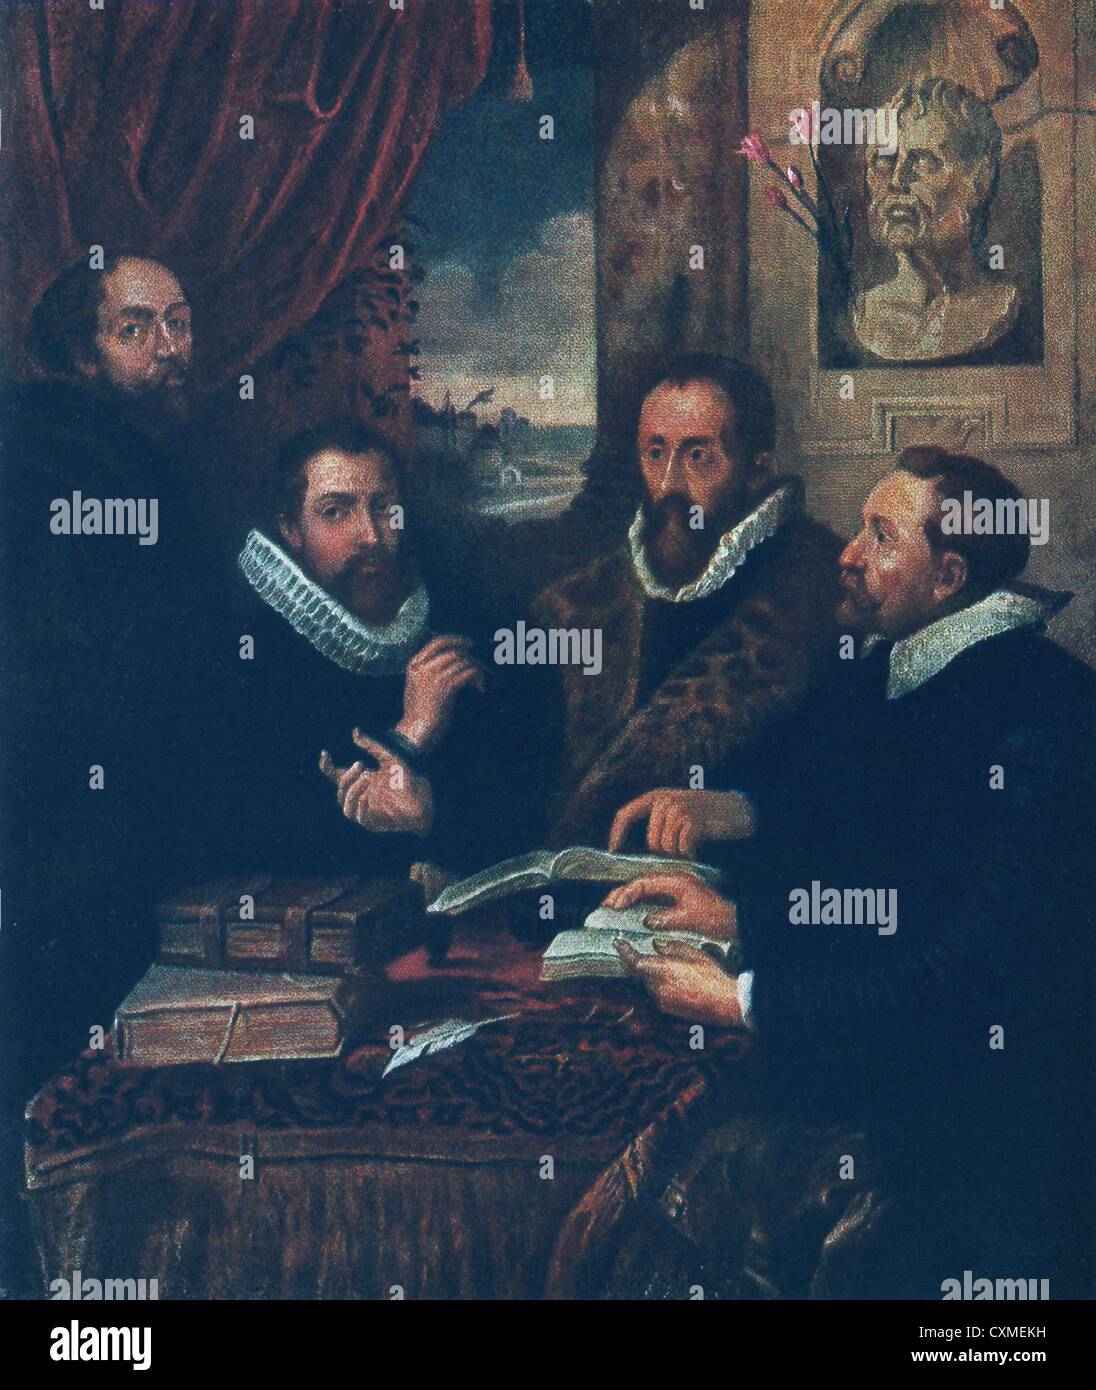 Dipinto da Peter Paul Rubens, quattro filosofi mostra Lipsius, alunno, Rubens a sinistra lontana, e suo fratello accanto a lui. Foto Stock